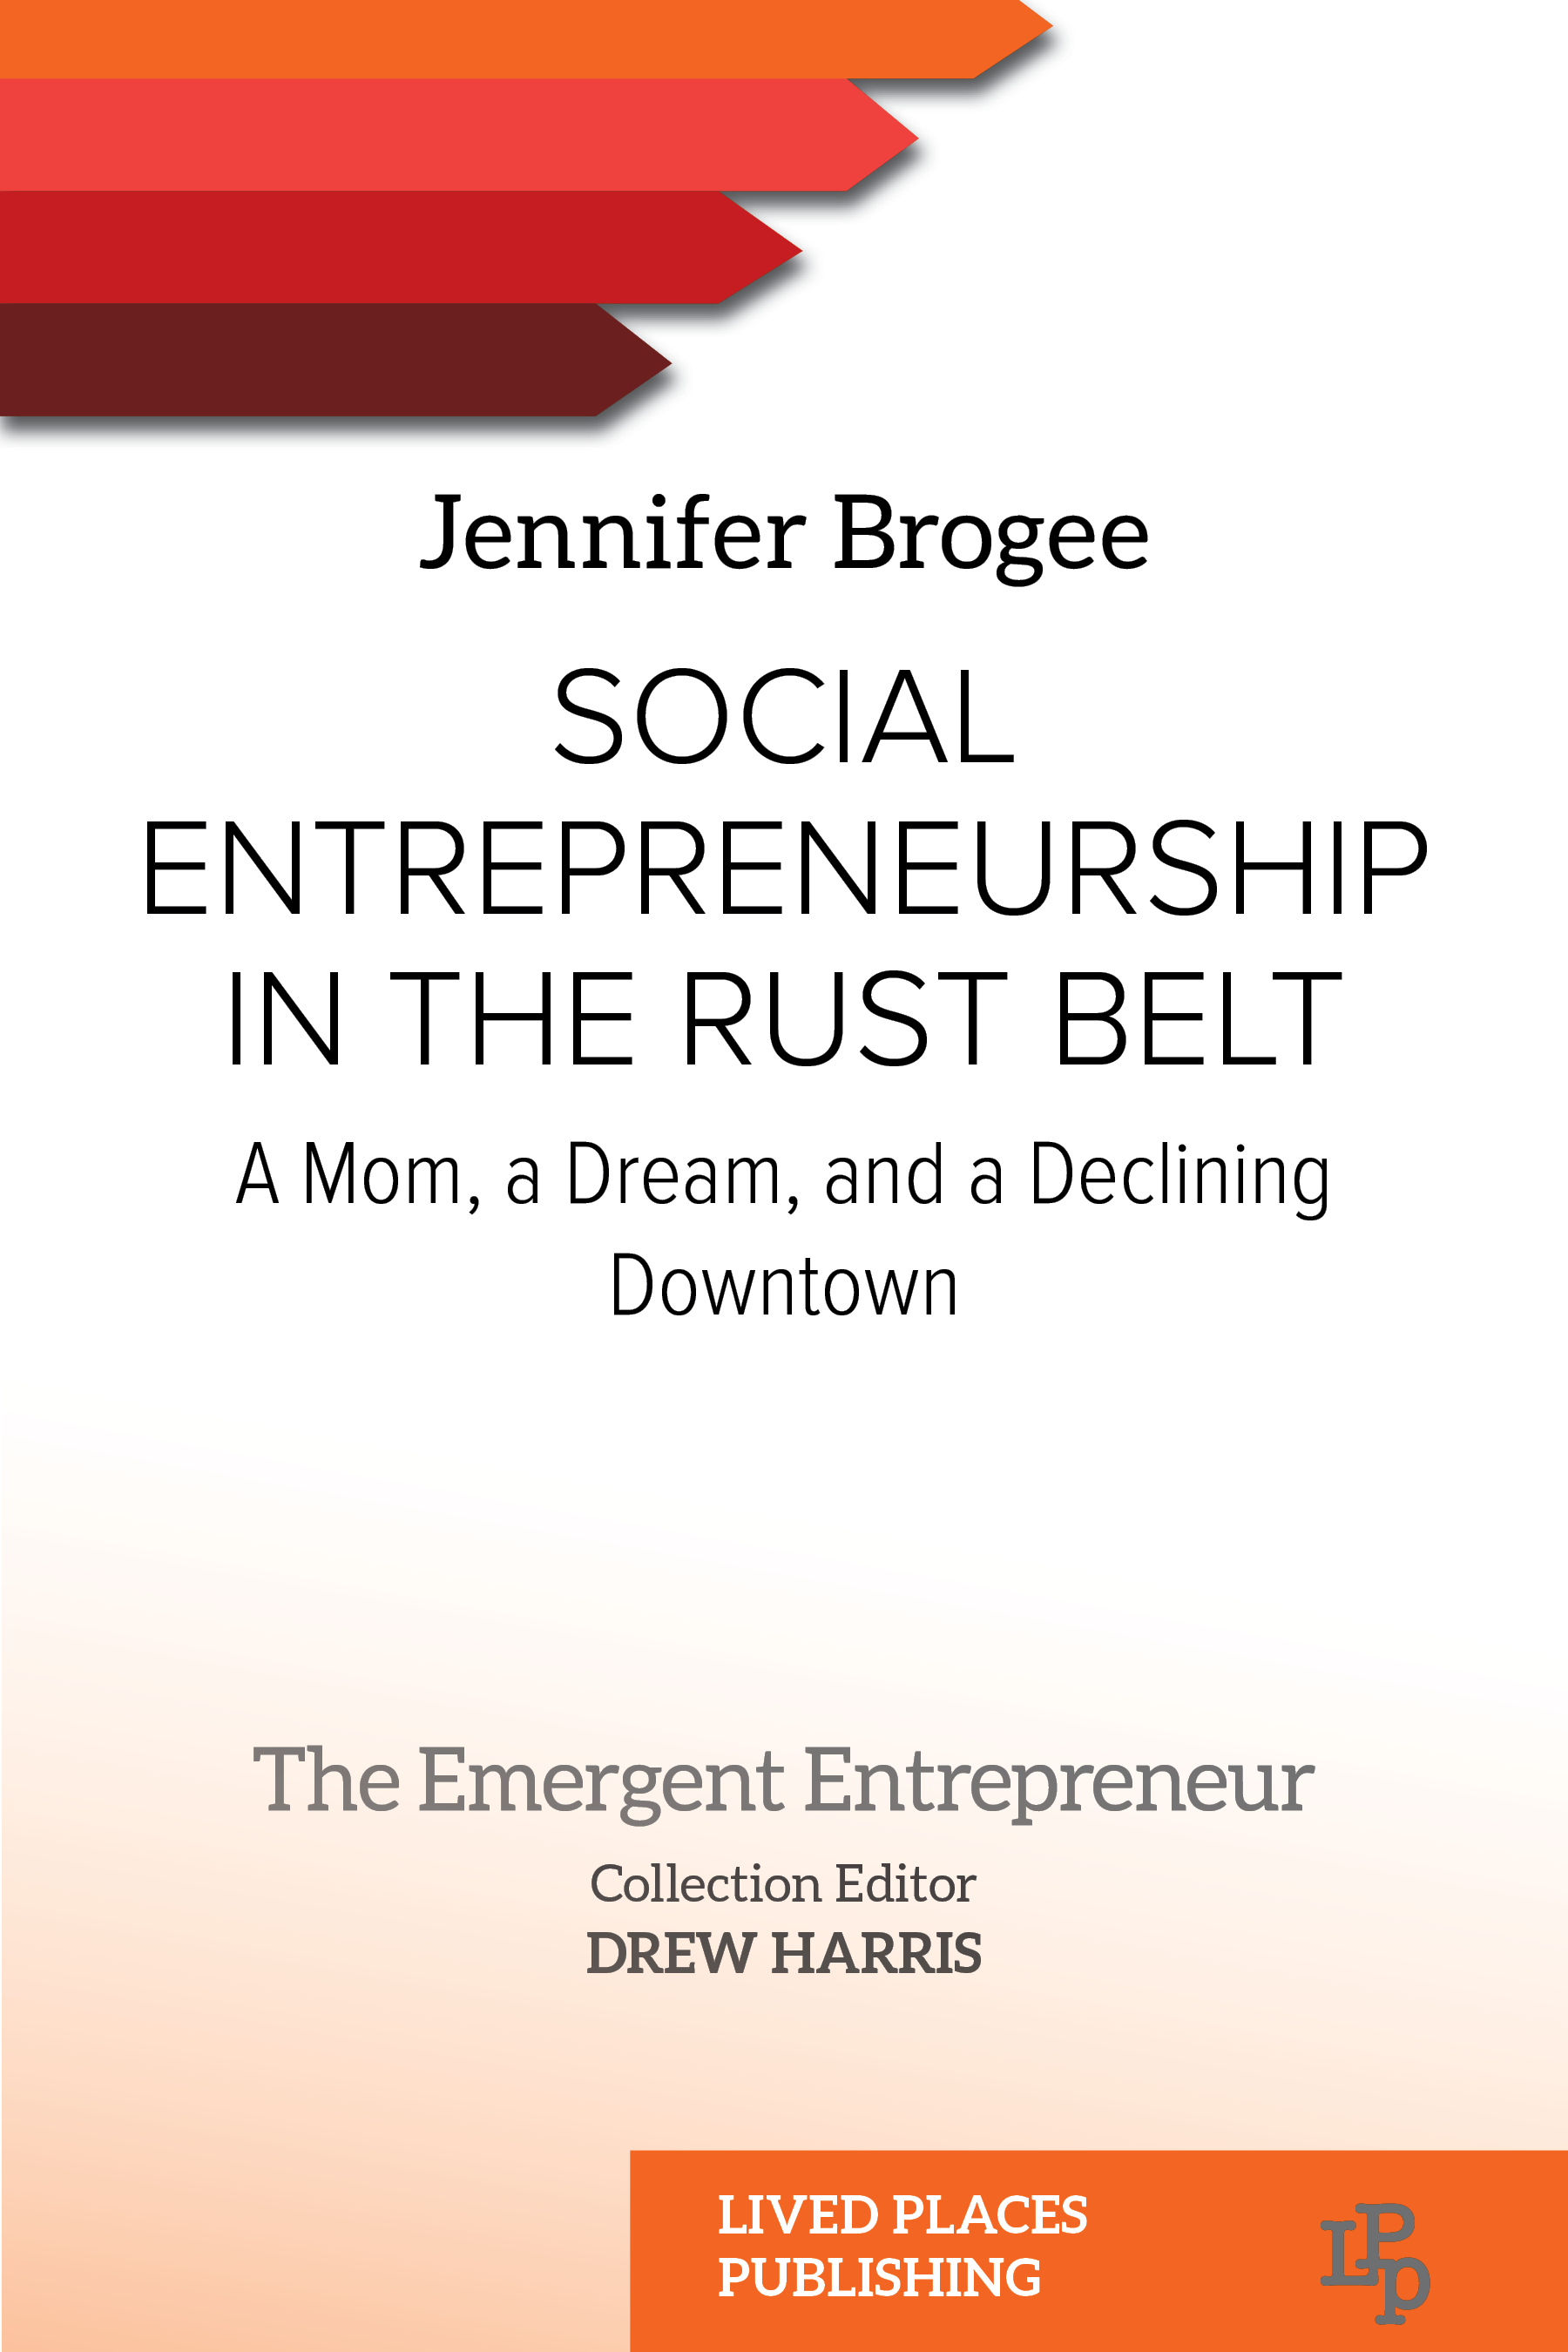 Can Social Entrepreneurship Work in the Rust Belt?